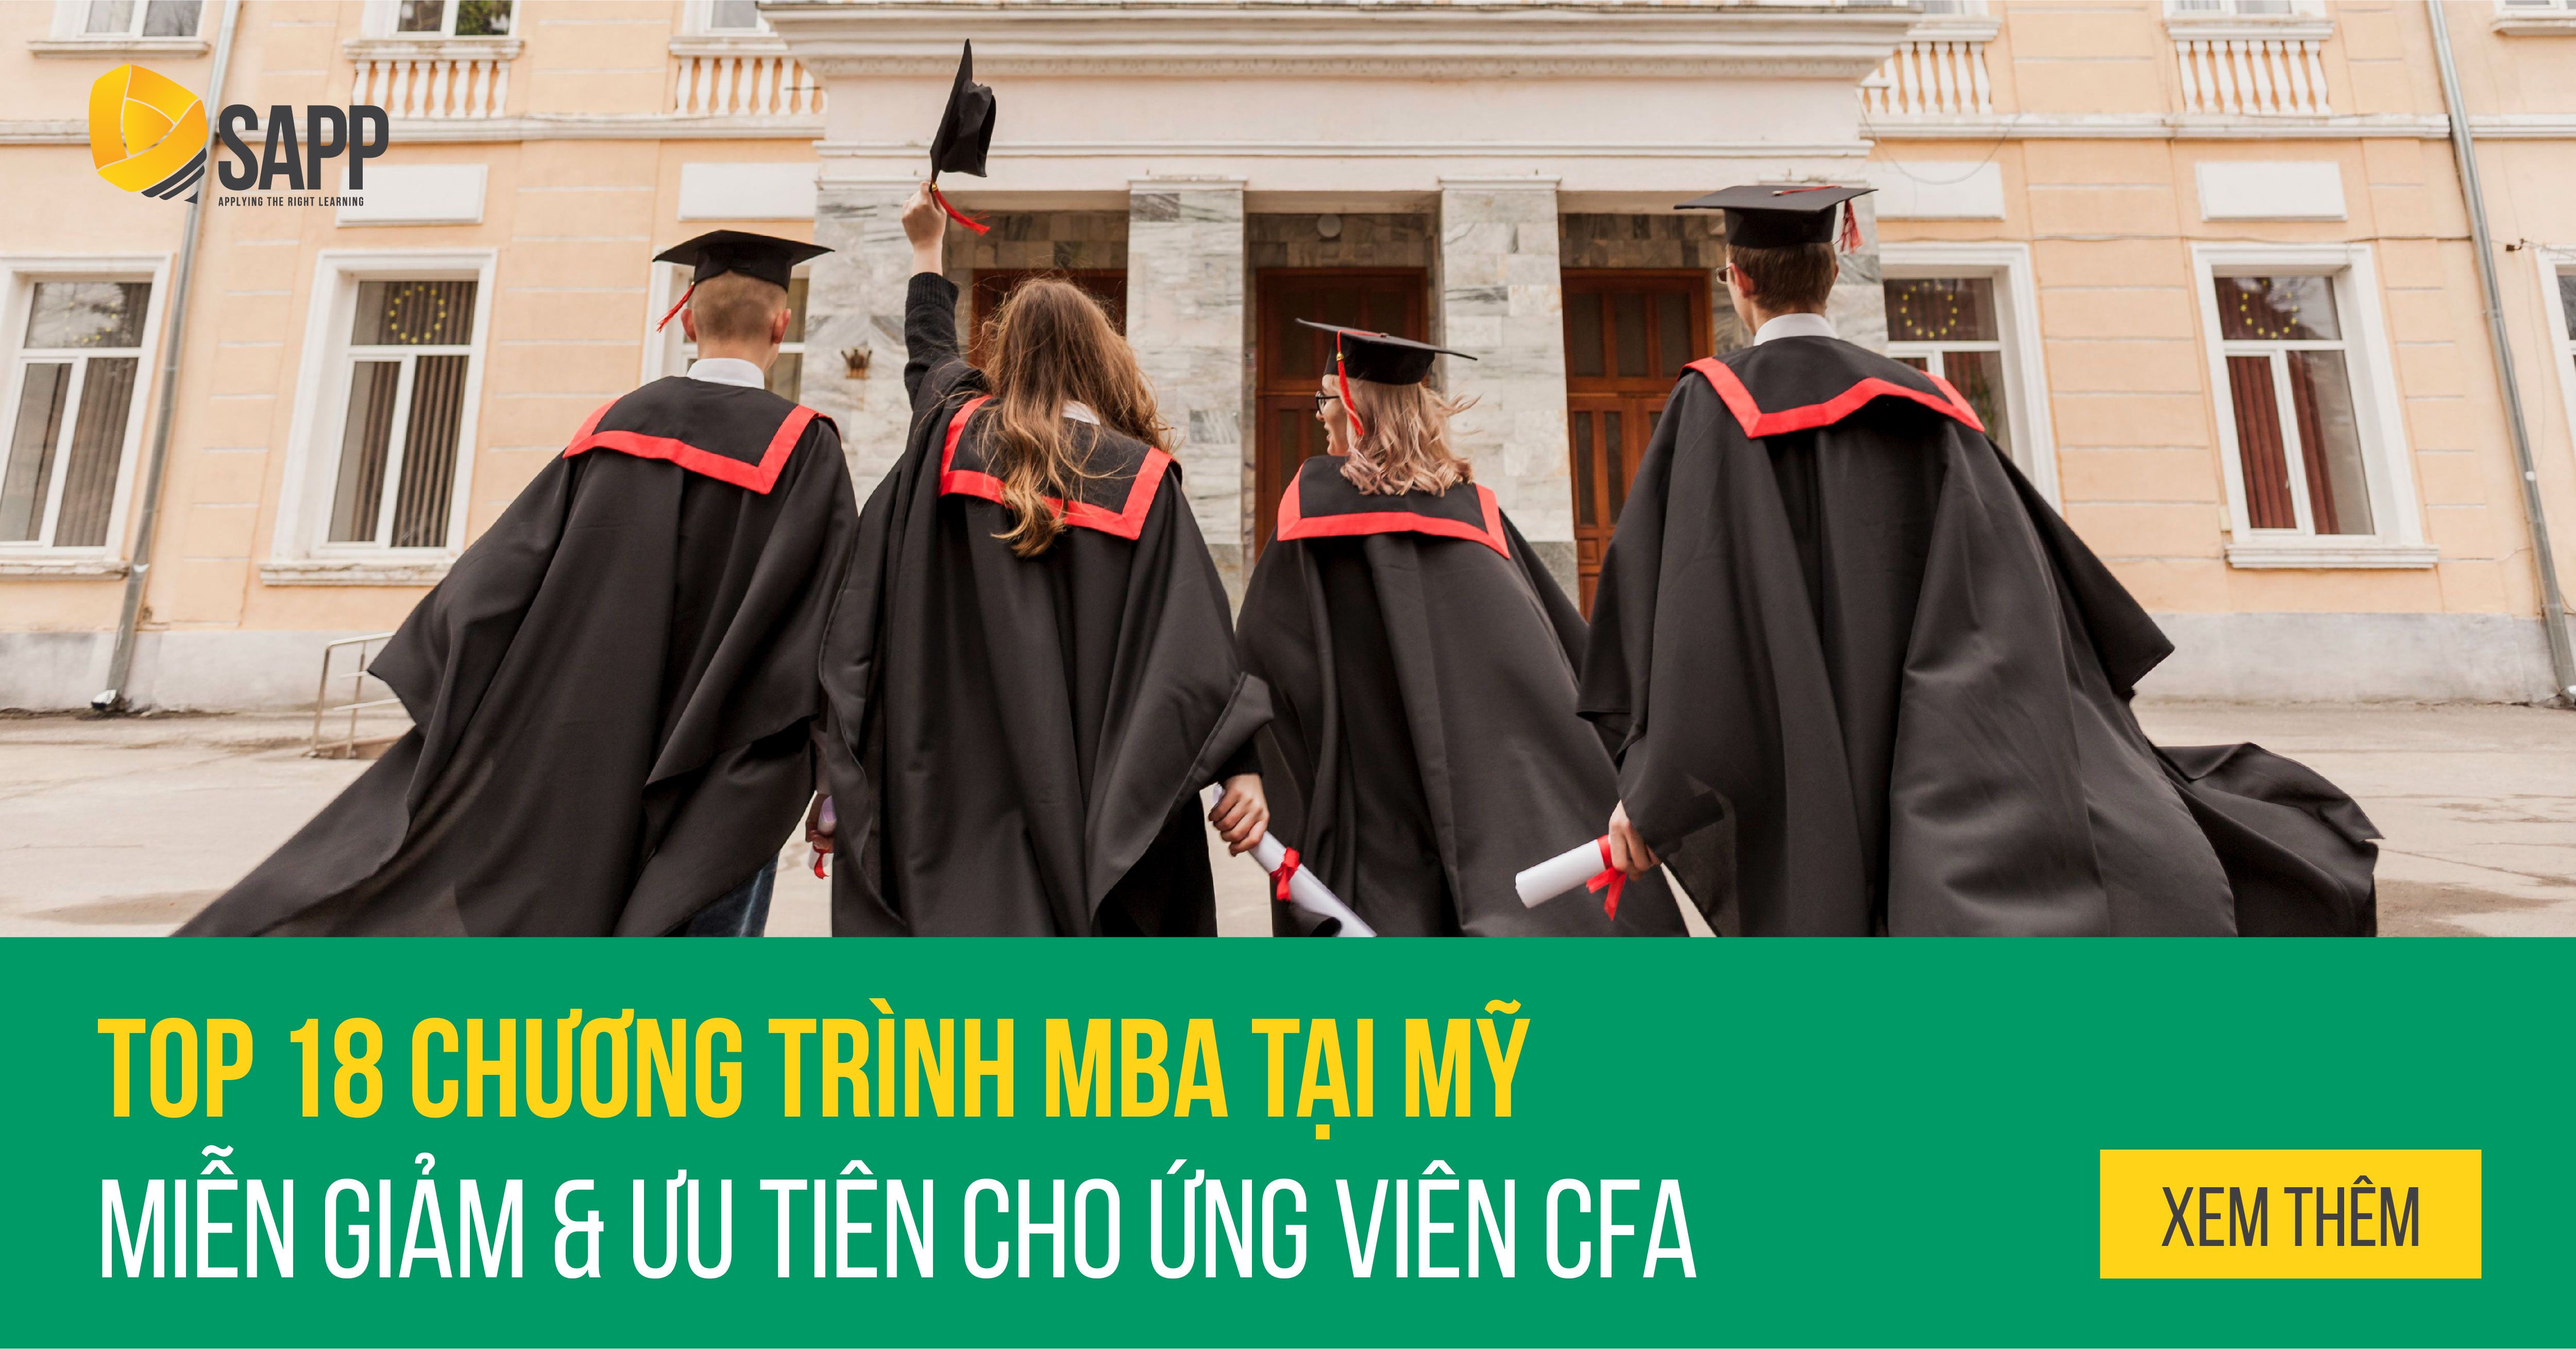 Top 18 Chương Trình MBA Tại Mỹ Có Miễn Giảm Và Ưu Tiên Cho Ứng Viên CFA